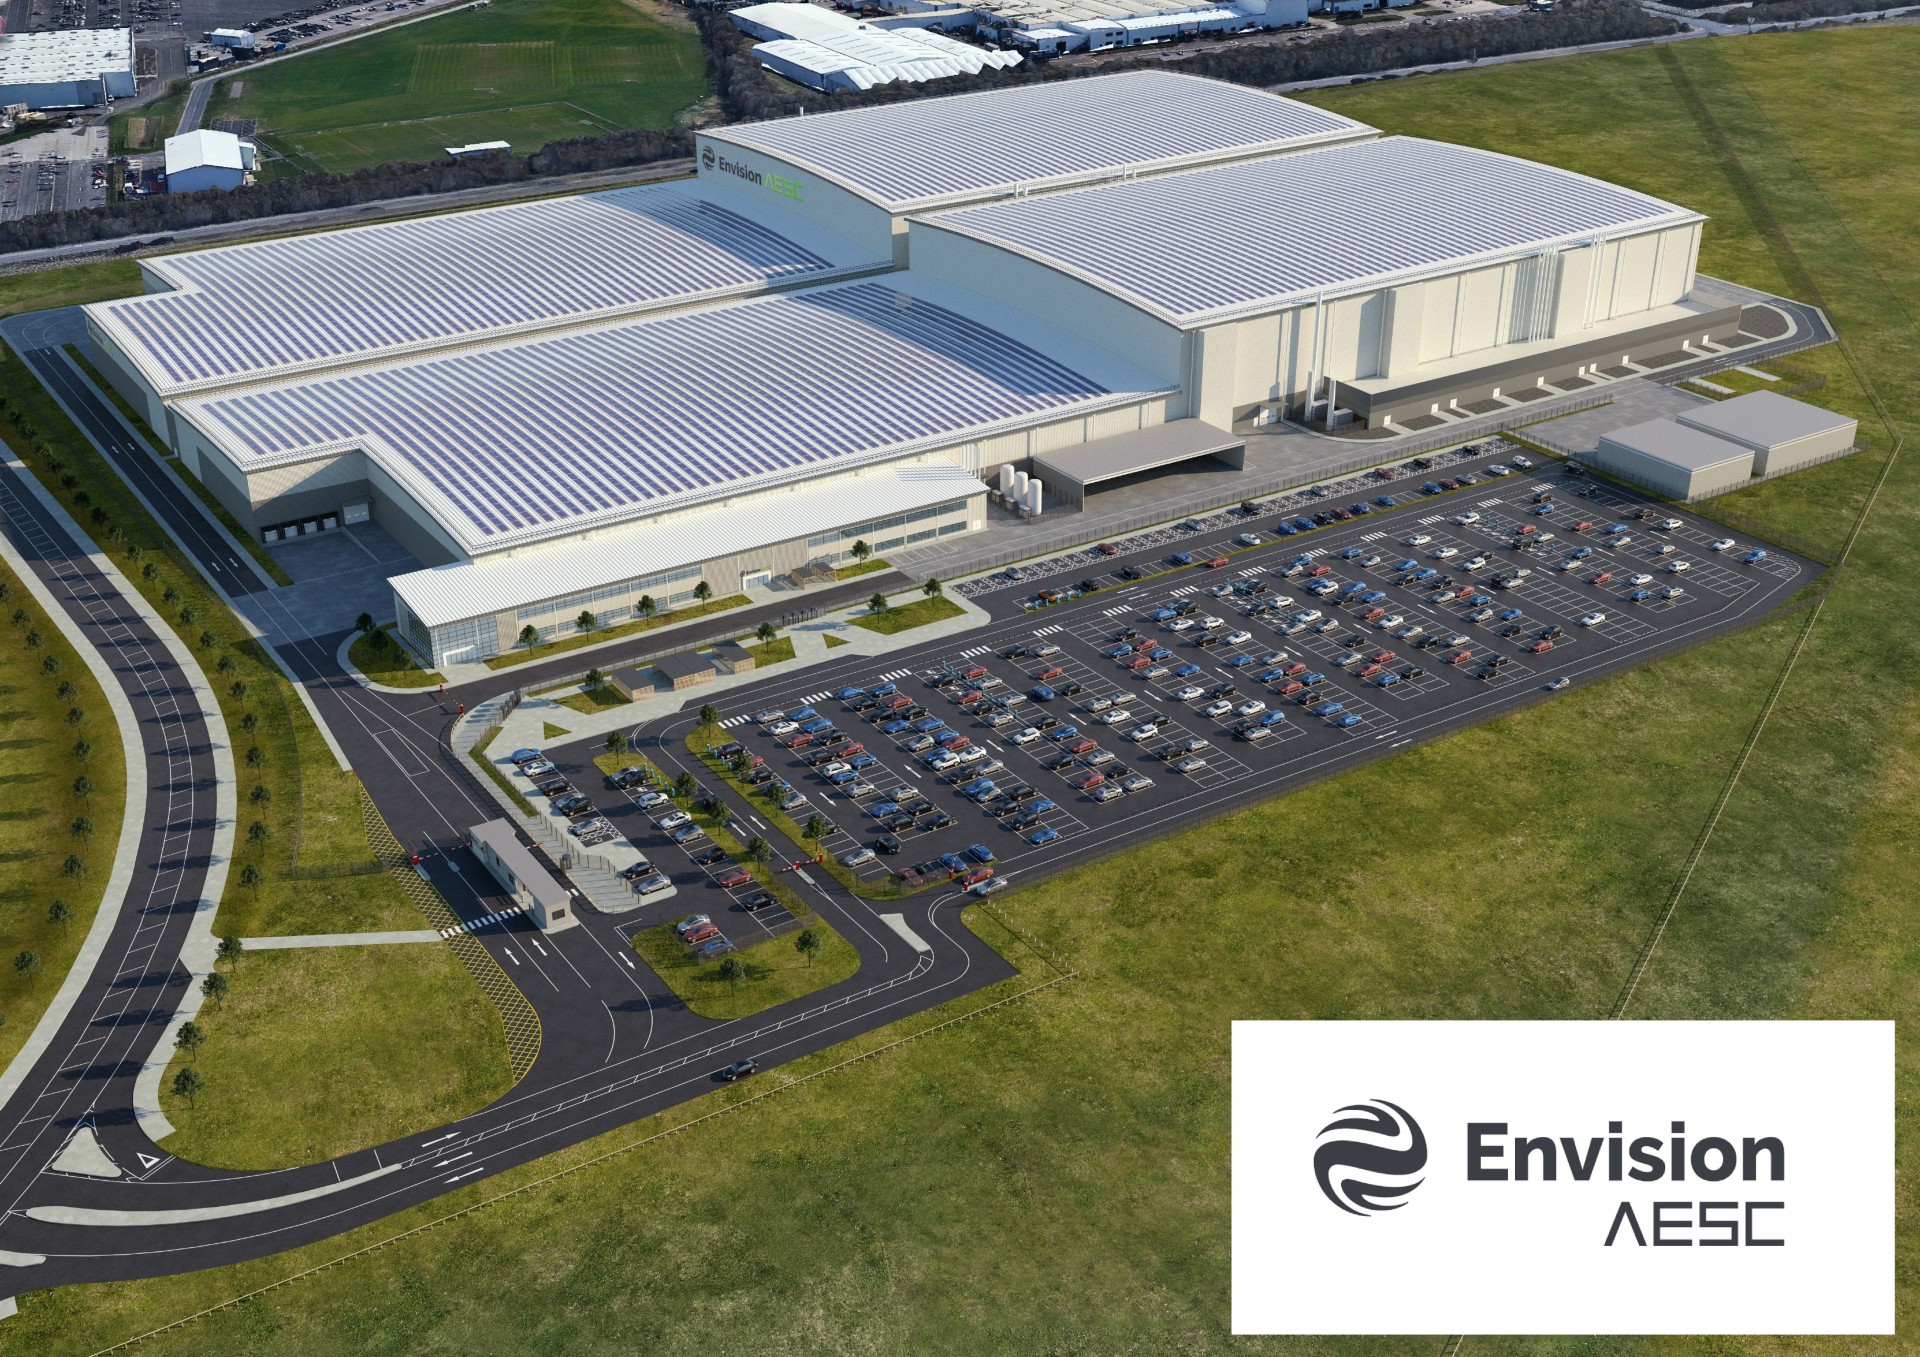 Fábrica em Sunderland, na Inglaterra, terá capacidade para produzir 10 mil carros por ano